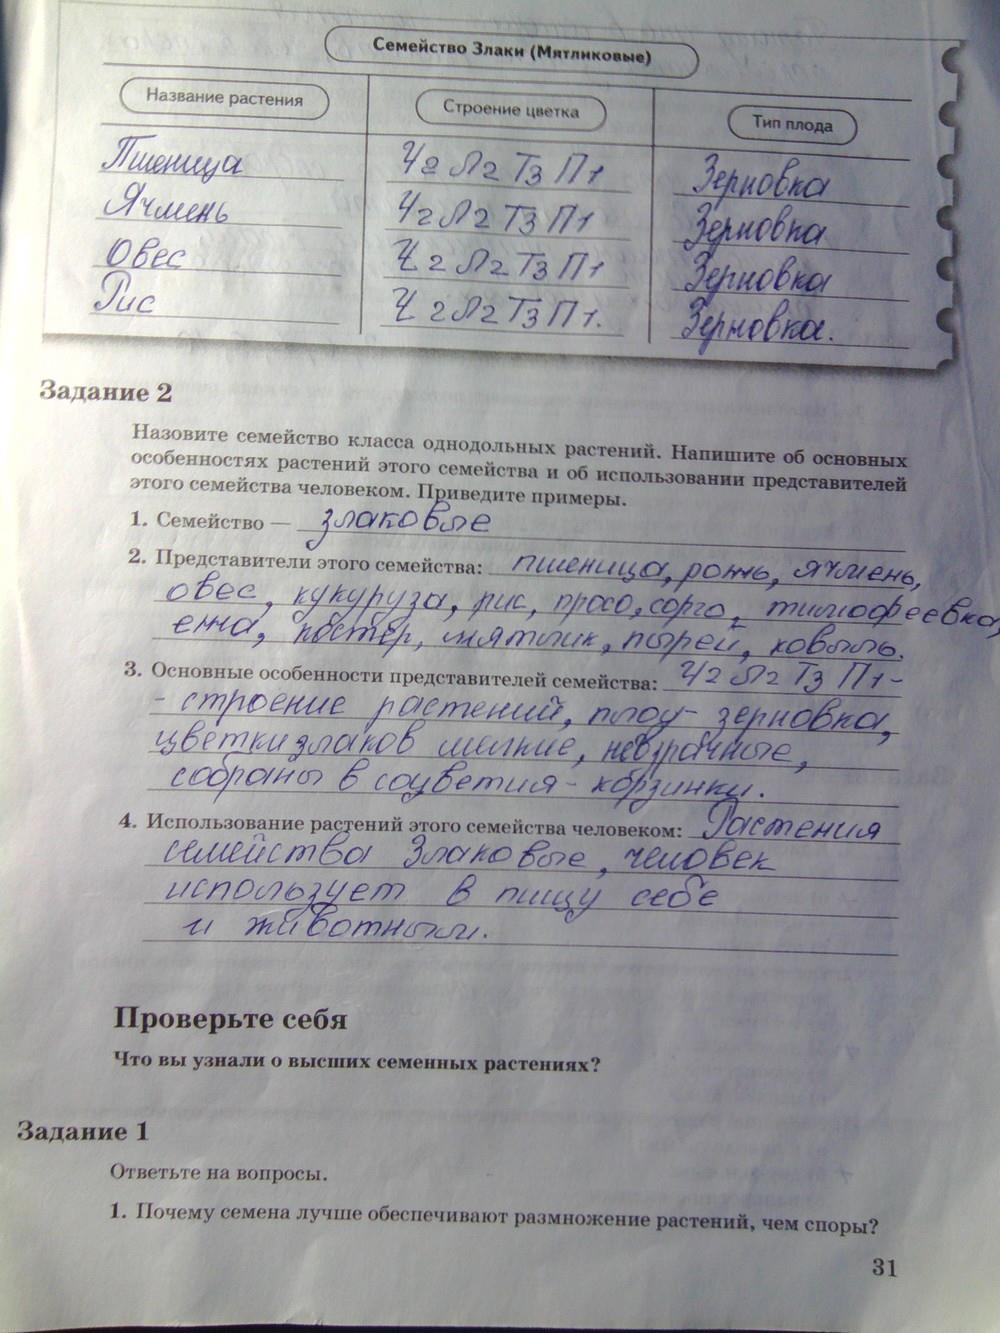 гдз 6 класс рабочая тетрадь часть 2 страница 31 биология Пономарева, Корнилова